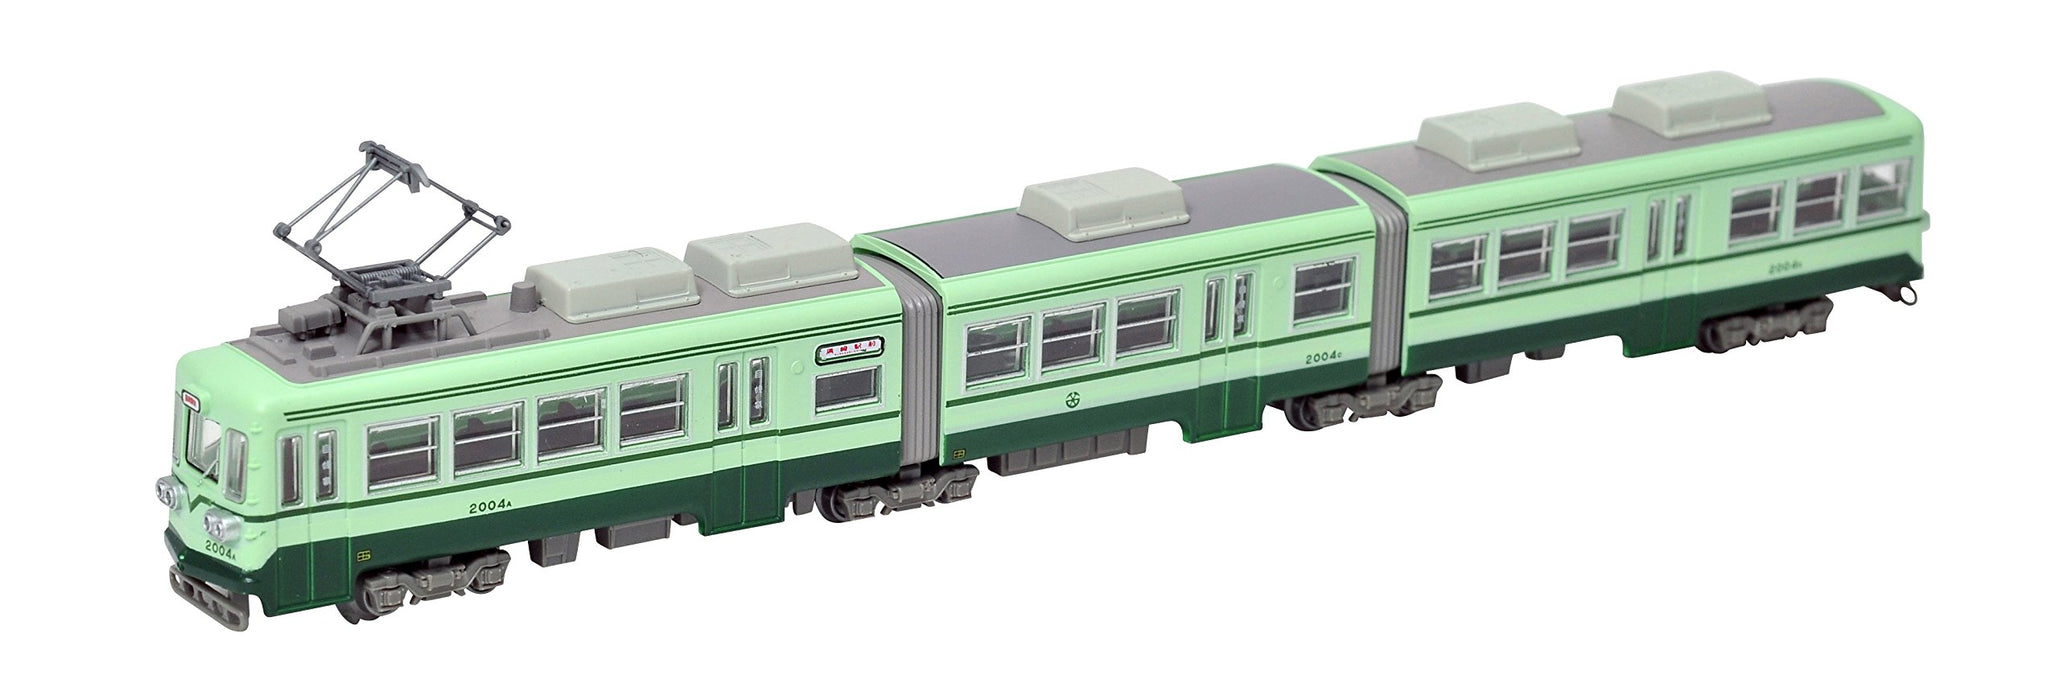 The Railway Collection The Railway Collection Chikuho Electric Railway Type 2000 No. 2004 Green Diorama Supplies (Erstbestellung begrenzte Produktion des Herstellers)